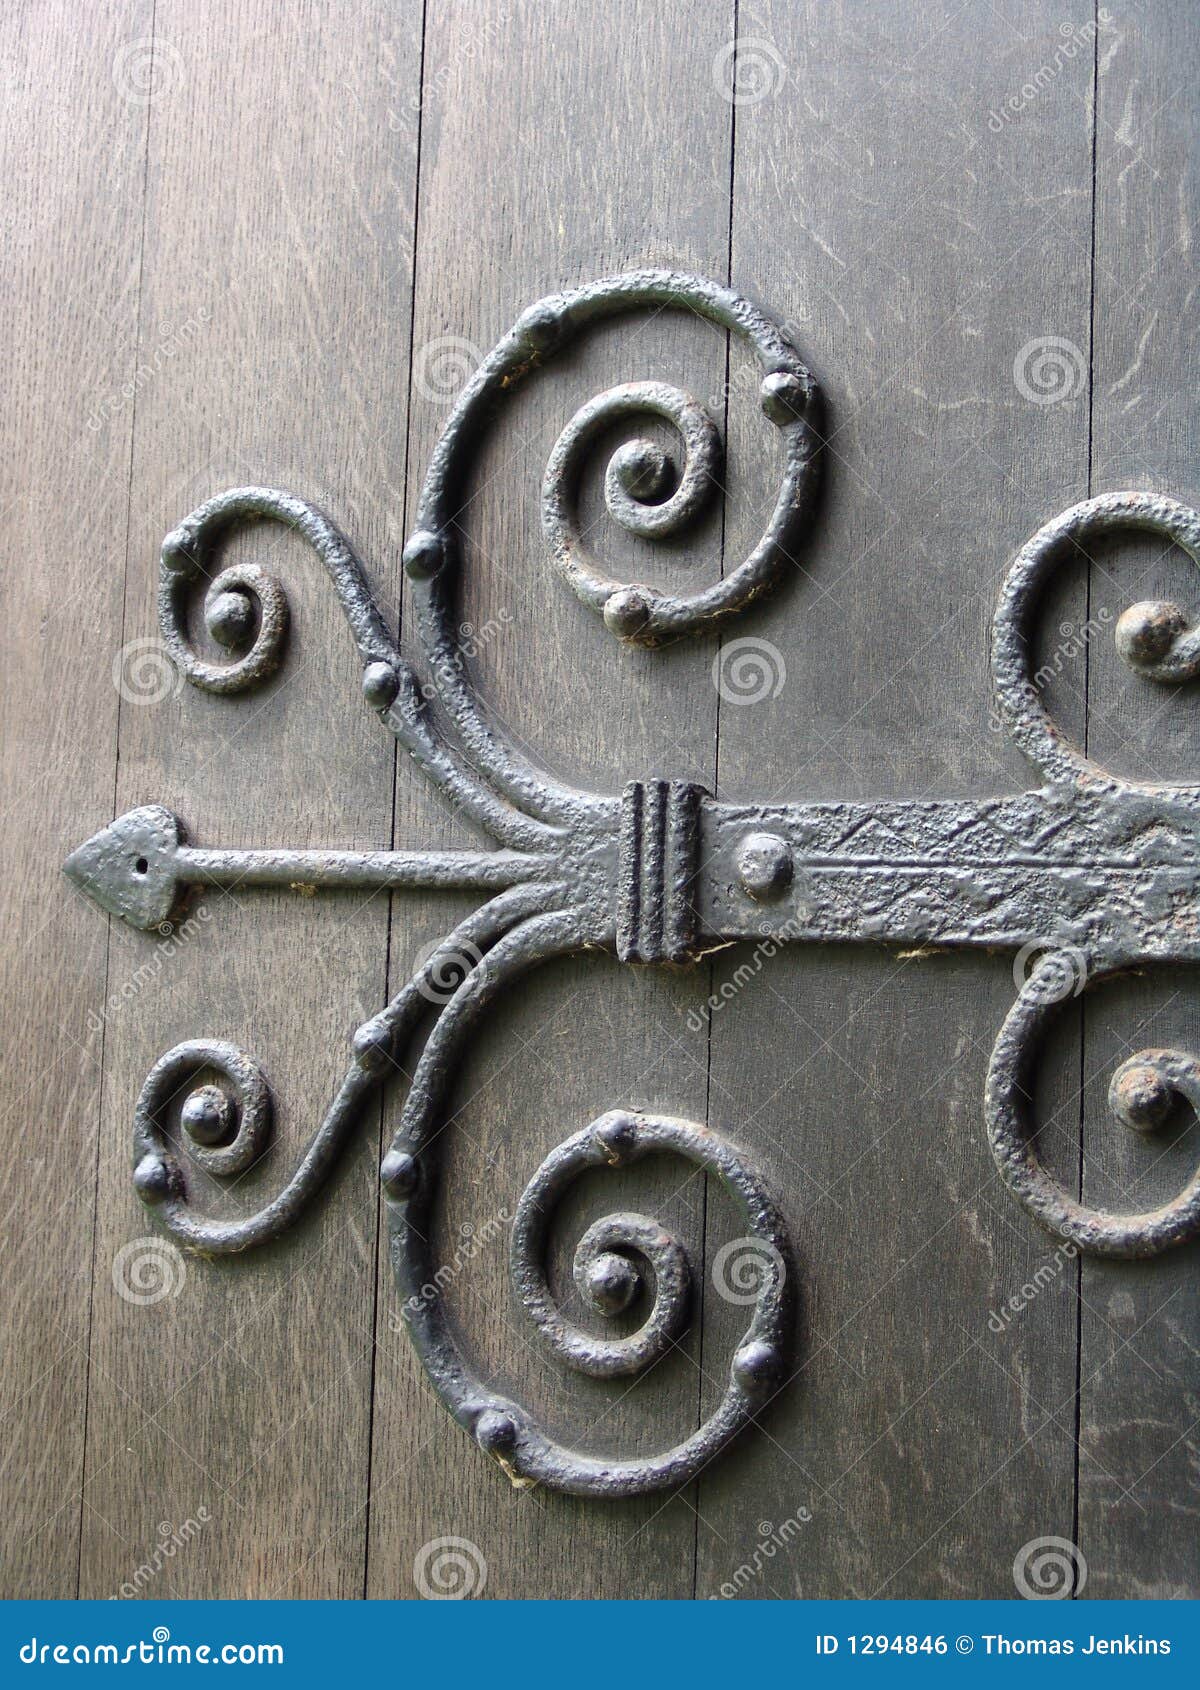 ancient metal door hinge